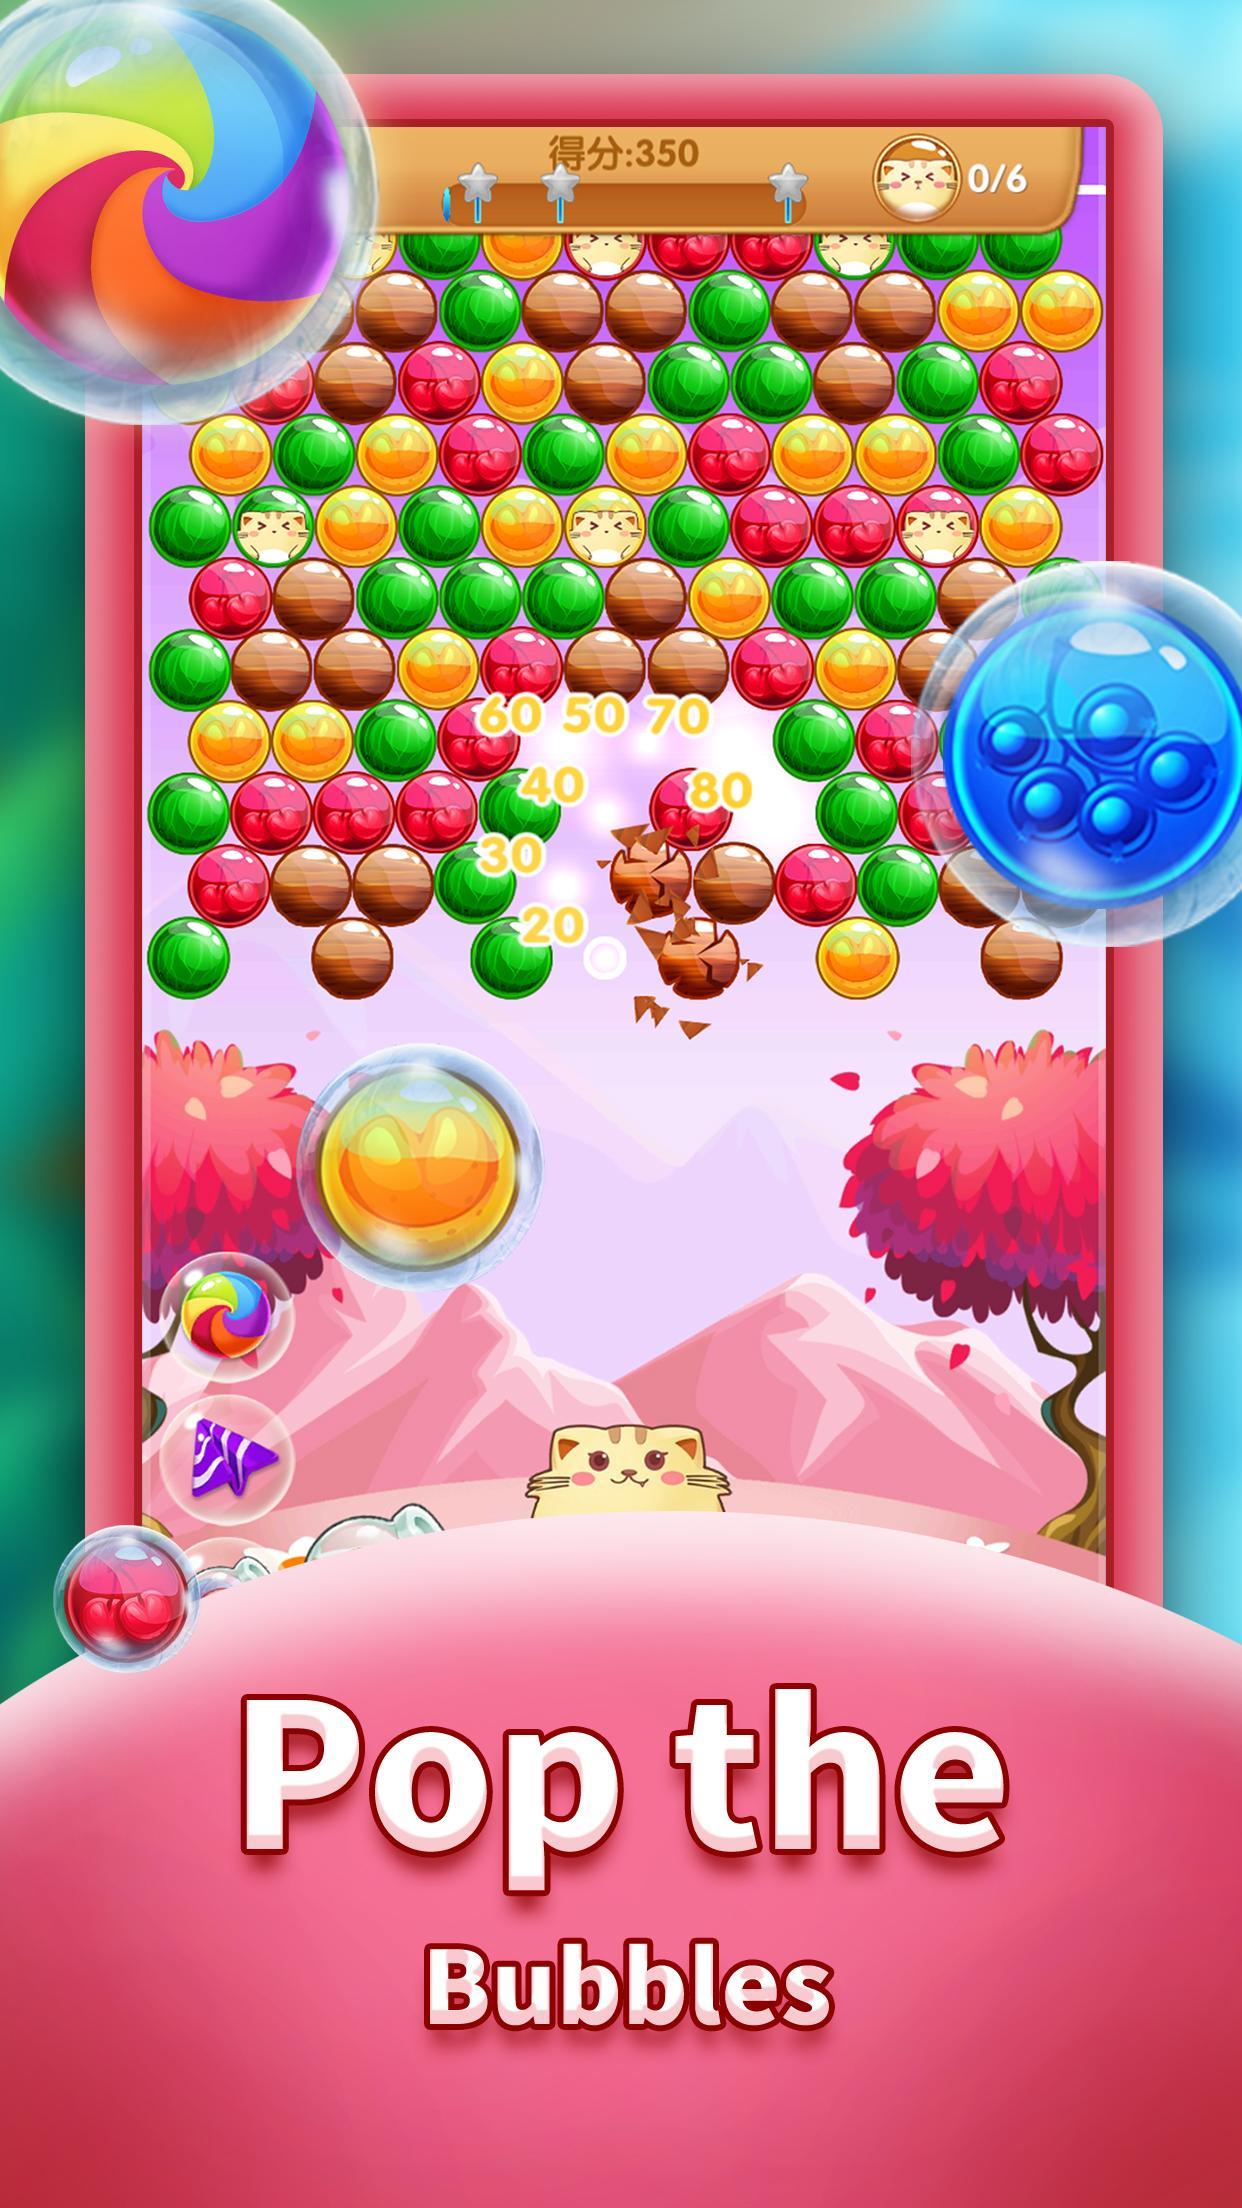 Screenshot 1 of Cat Pop - Trò chơi bắn bong bóng 1.0.7